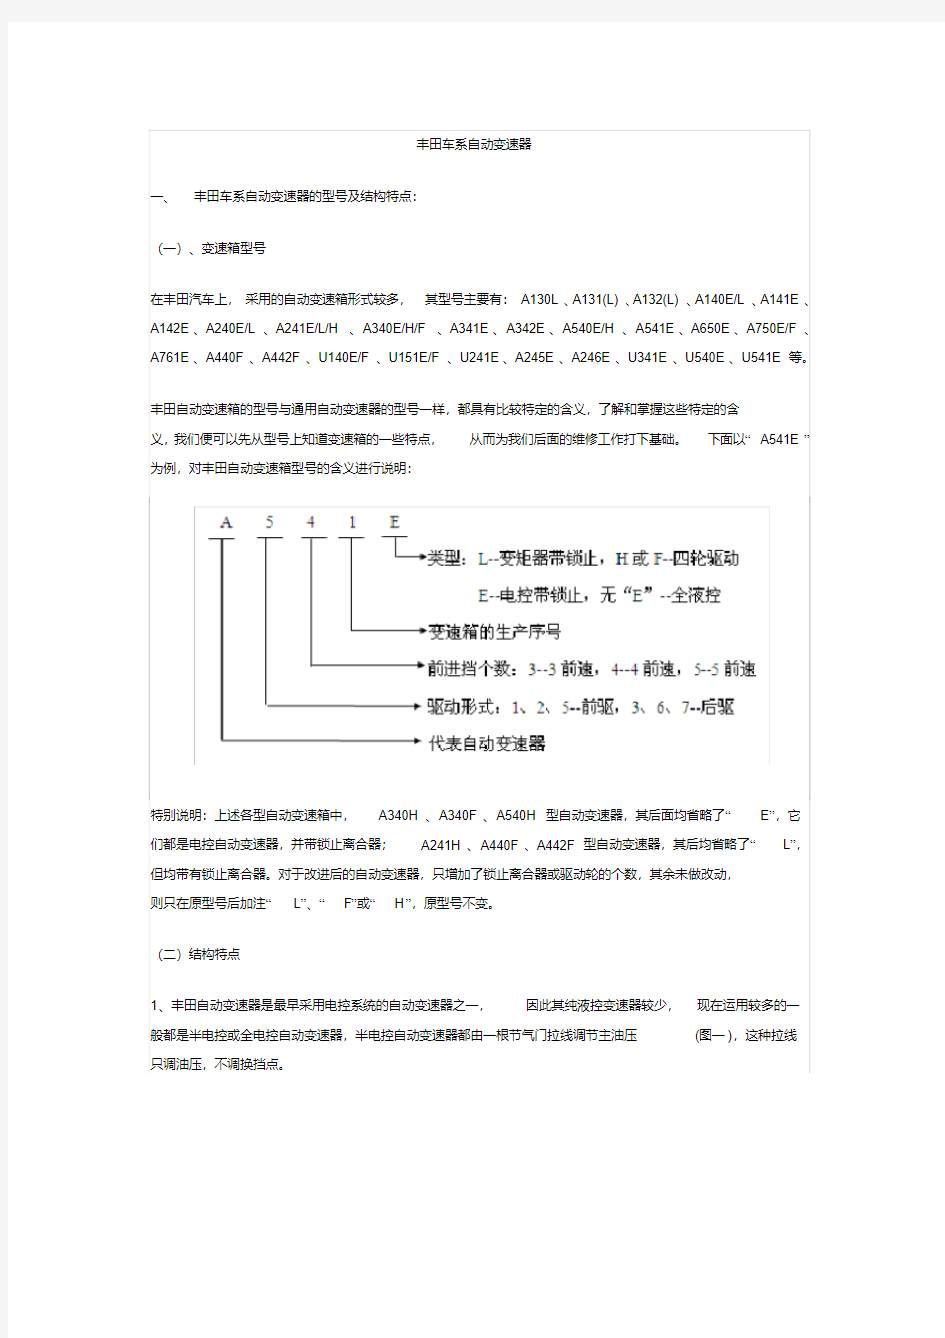 丰田车系自动变速器.pdf